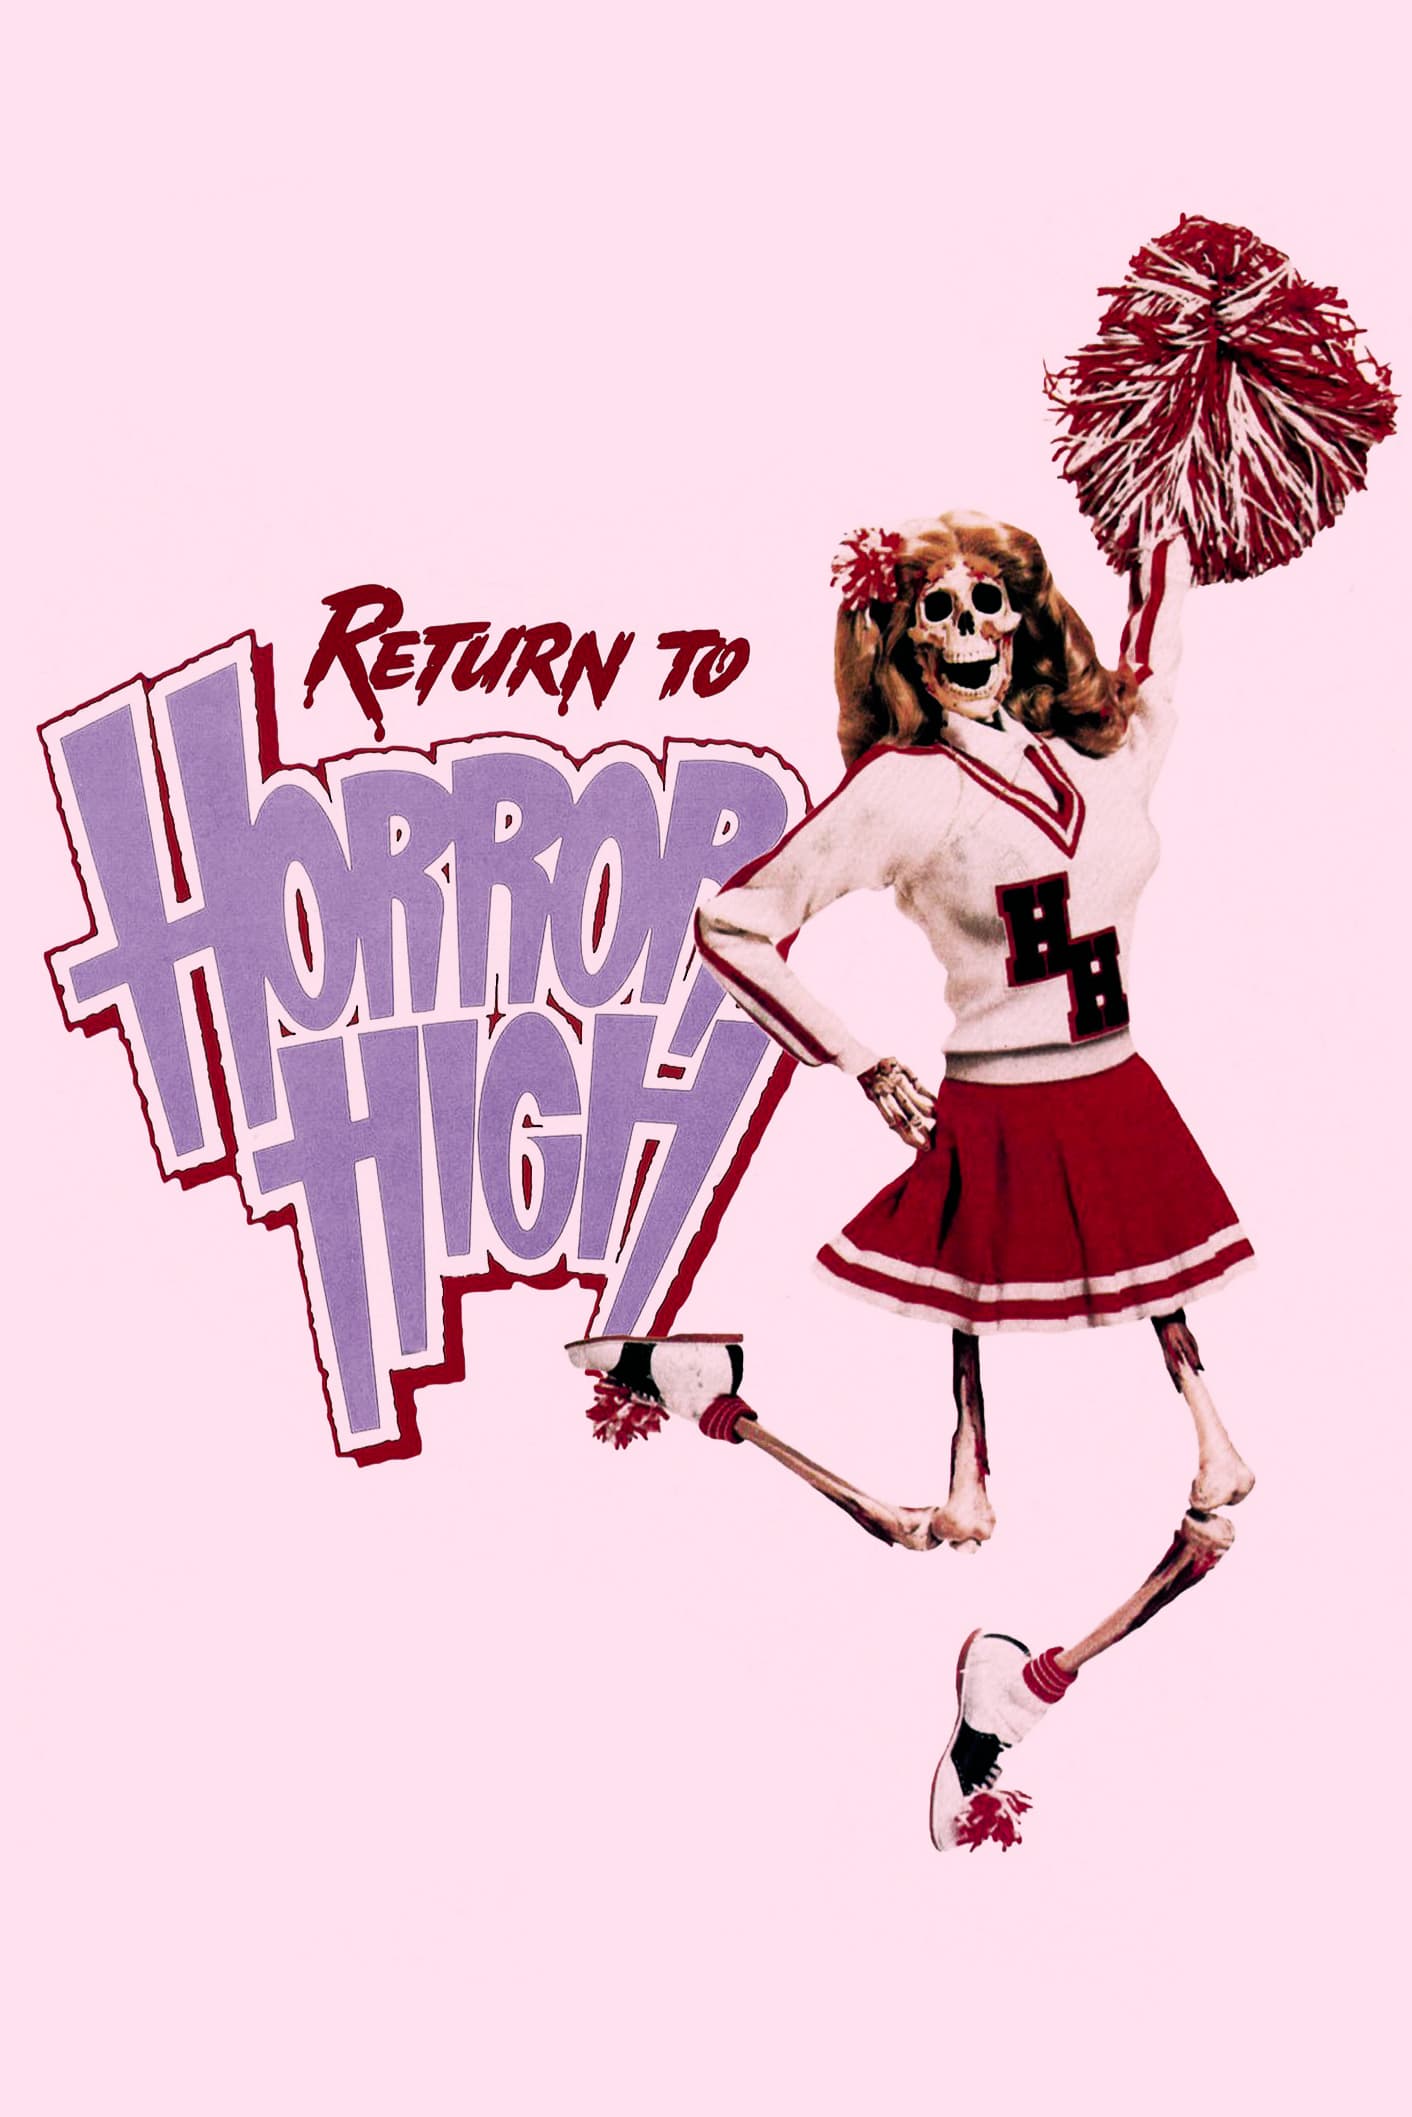 Plakat von "Return to Horror High"